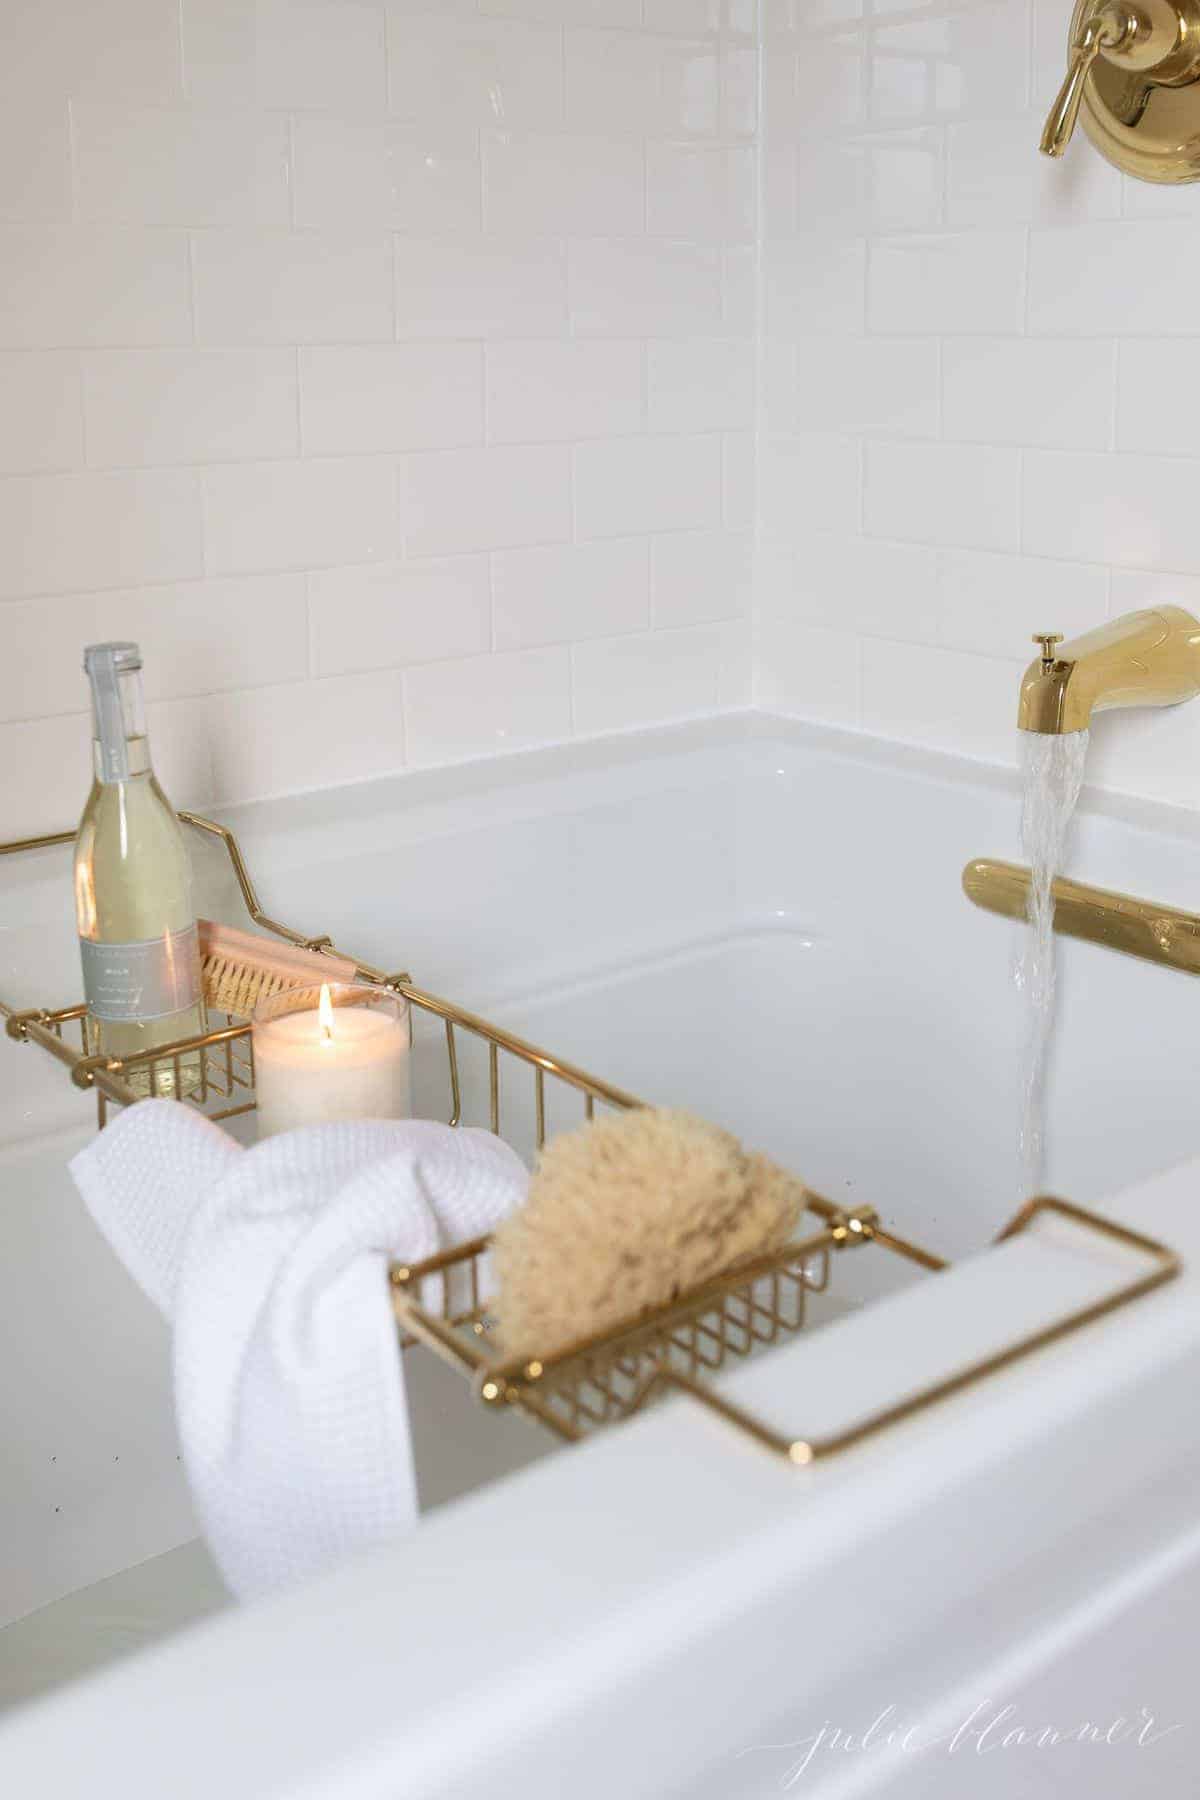 一个黄铜浴盘，里面有蜡烛、香槟、海绵和毛巾等各种物品，让你拥有终极的沐浴体验。